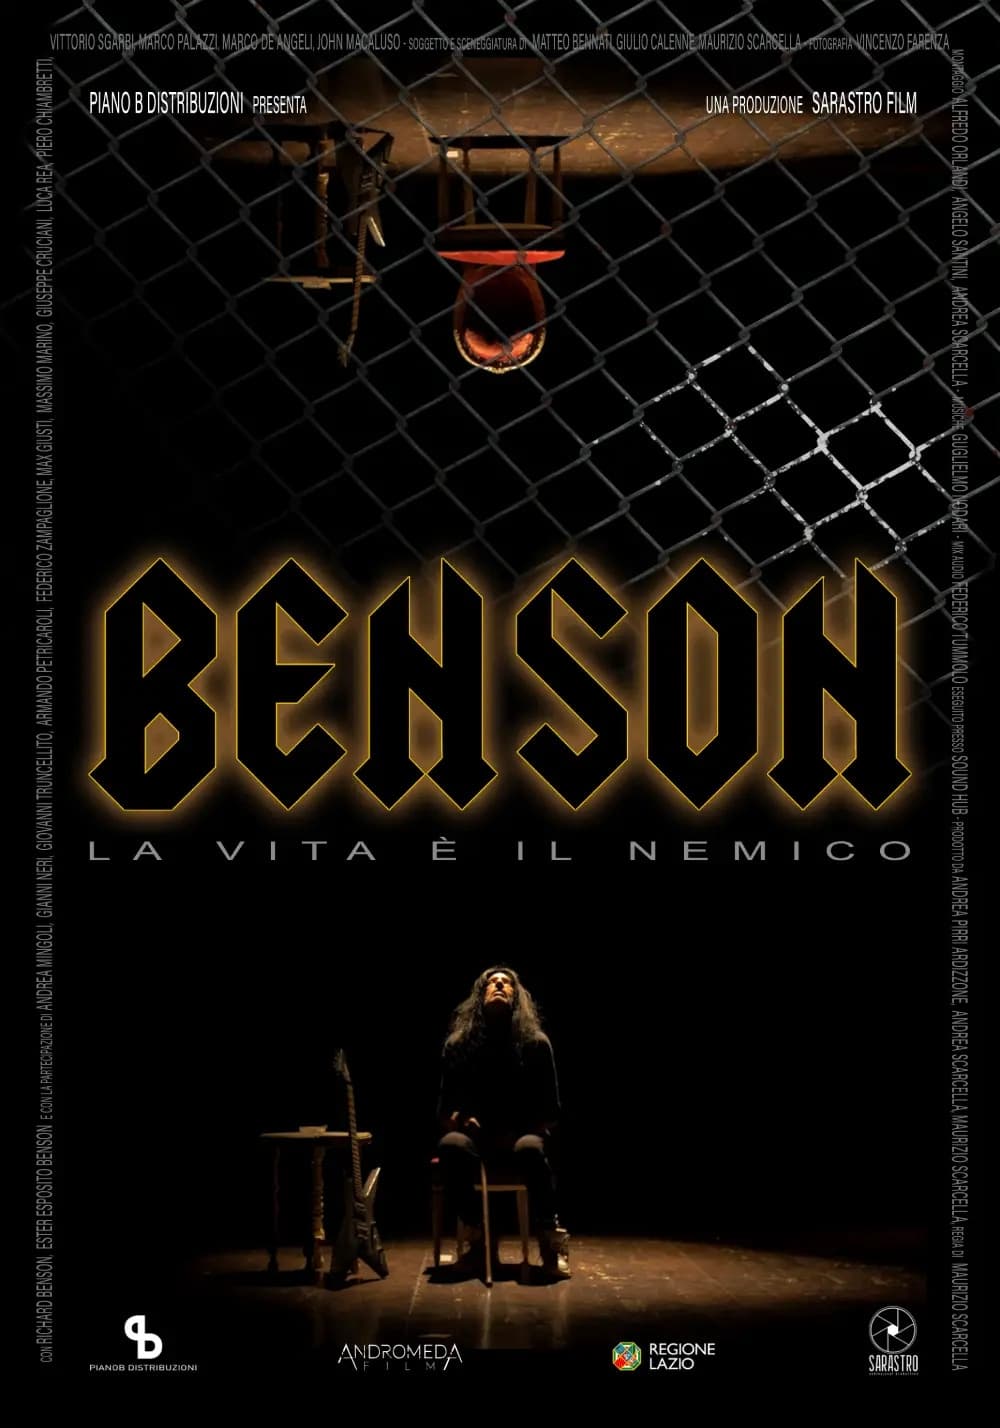 Benson – La vita è il nemico